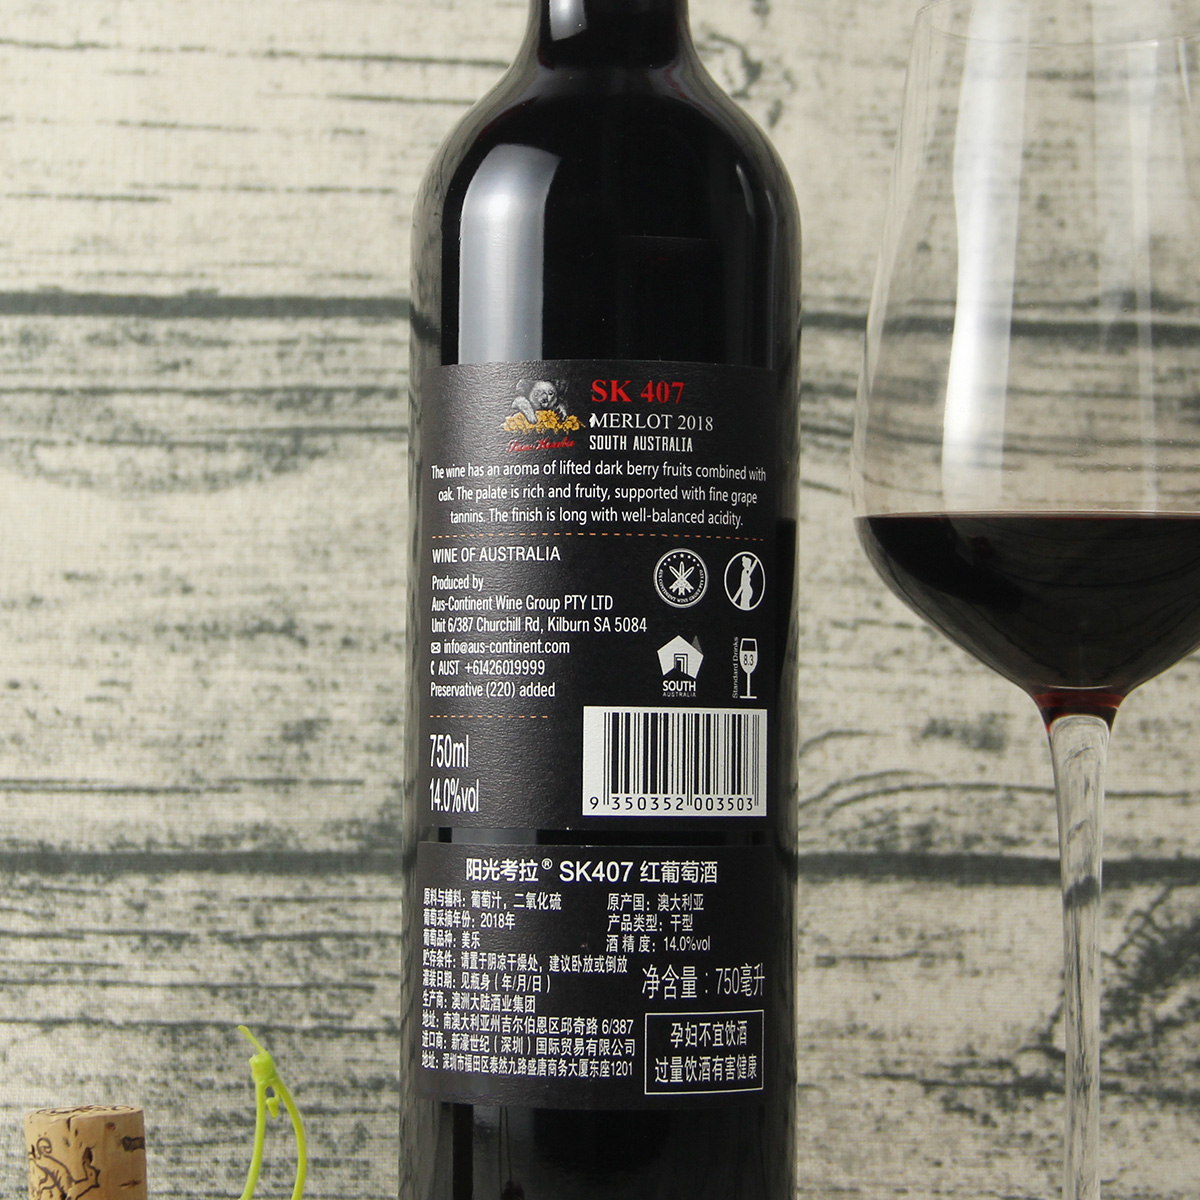 关于威武酒庄南澳干红葡萄酒的信息